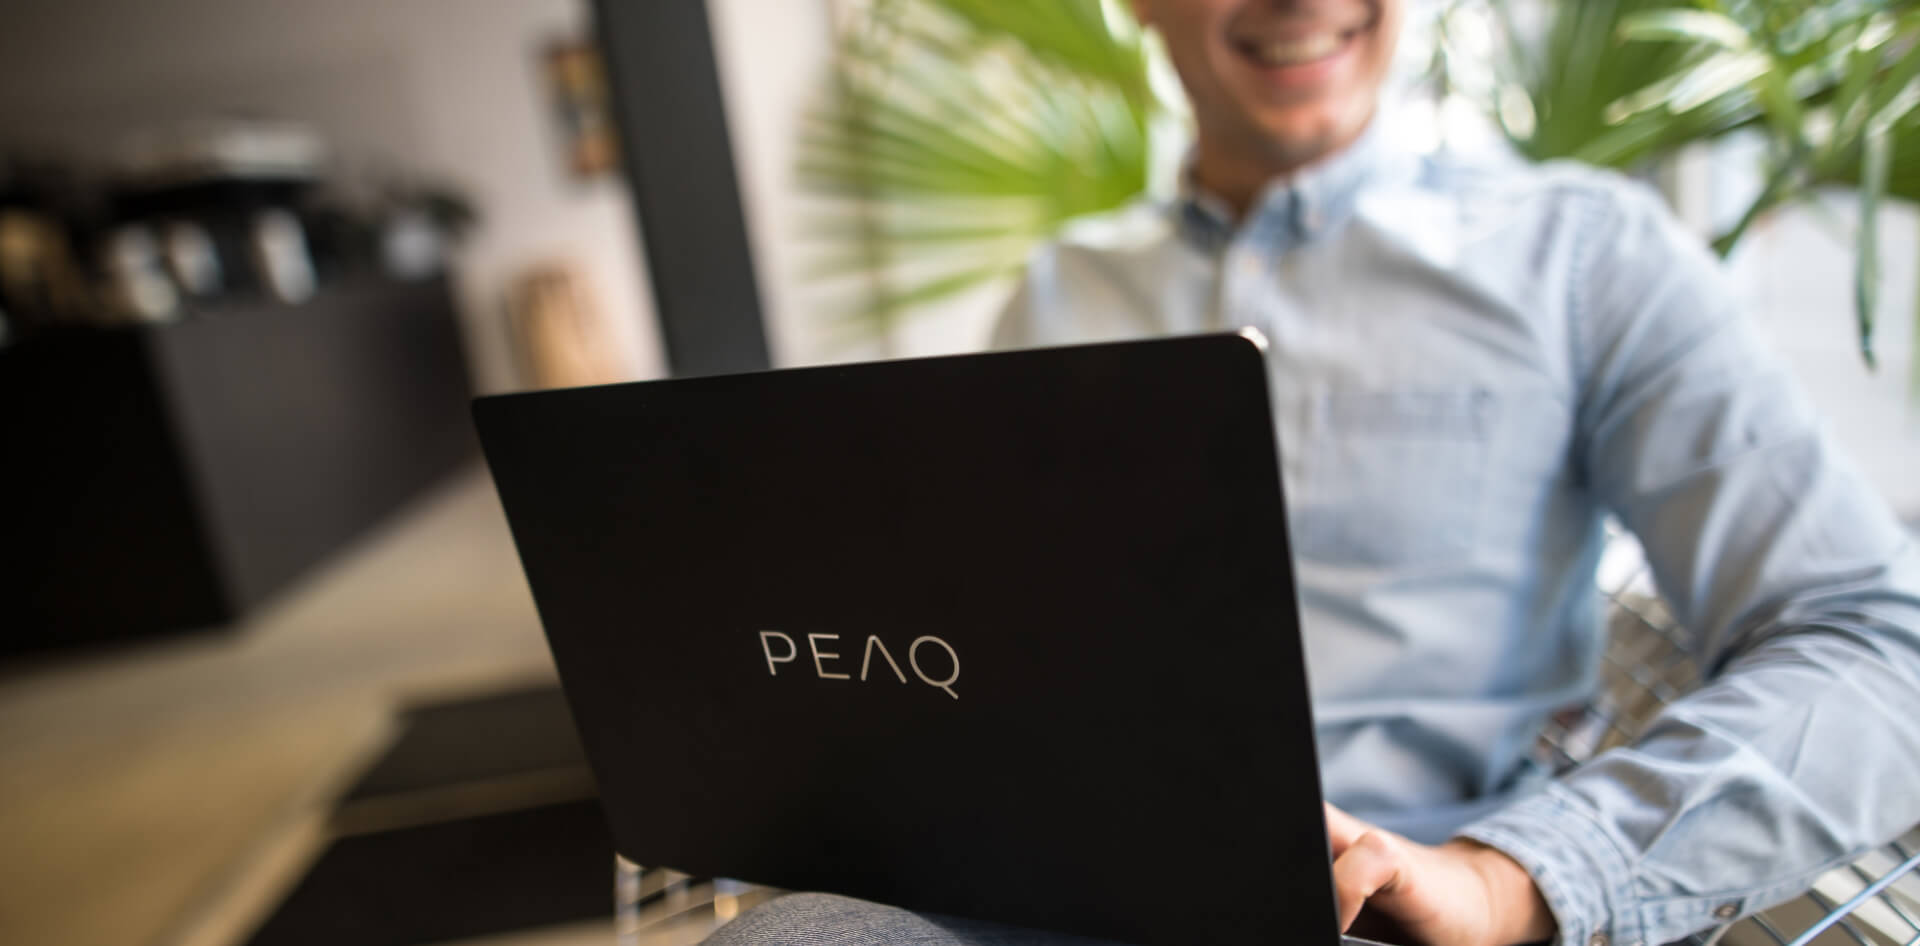 Home jove amb el portàtil de PEAQ a la falda, somriu, està assegut a l’oficina o cafeteria, vista de prop